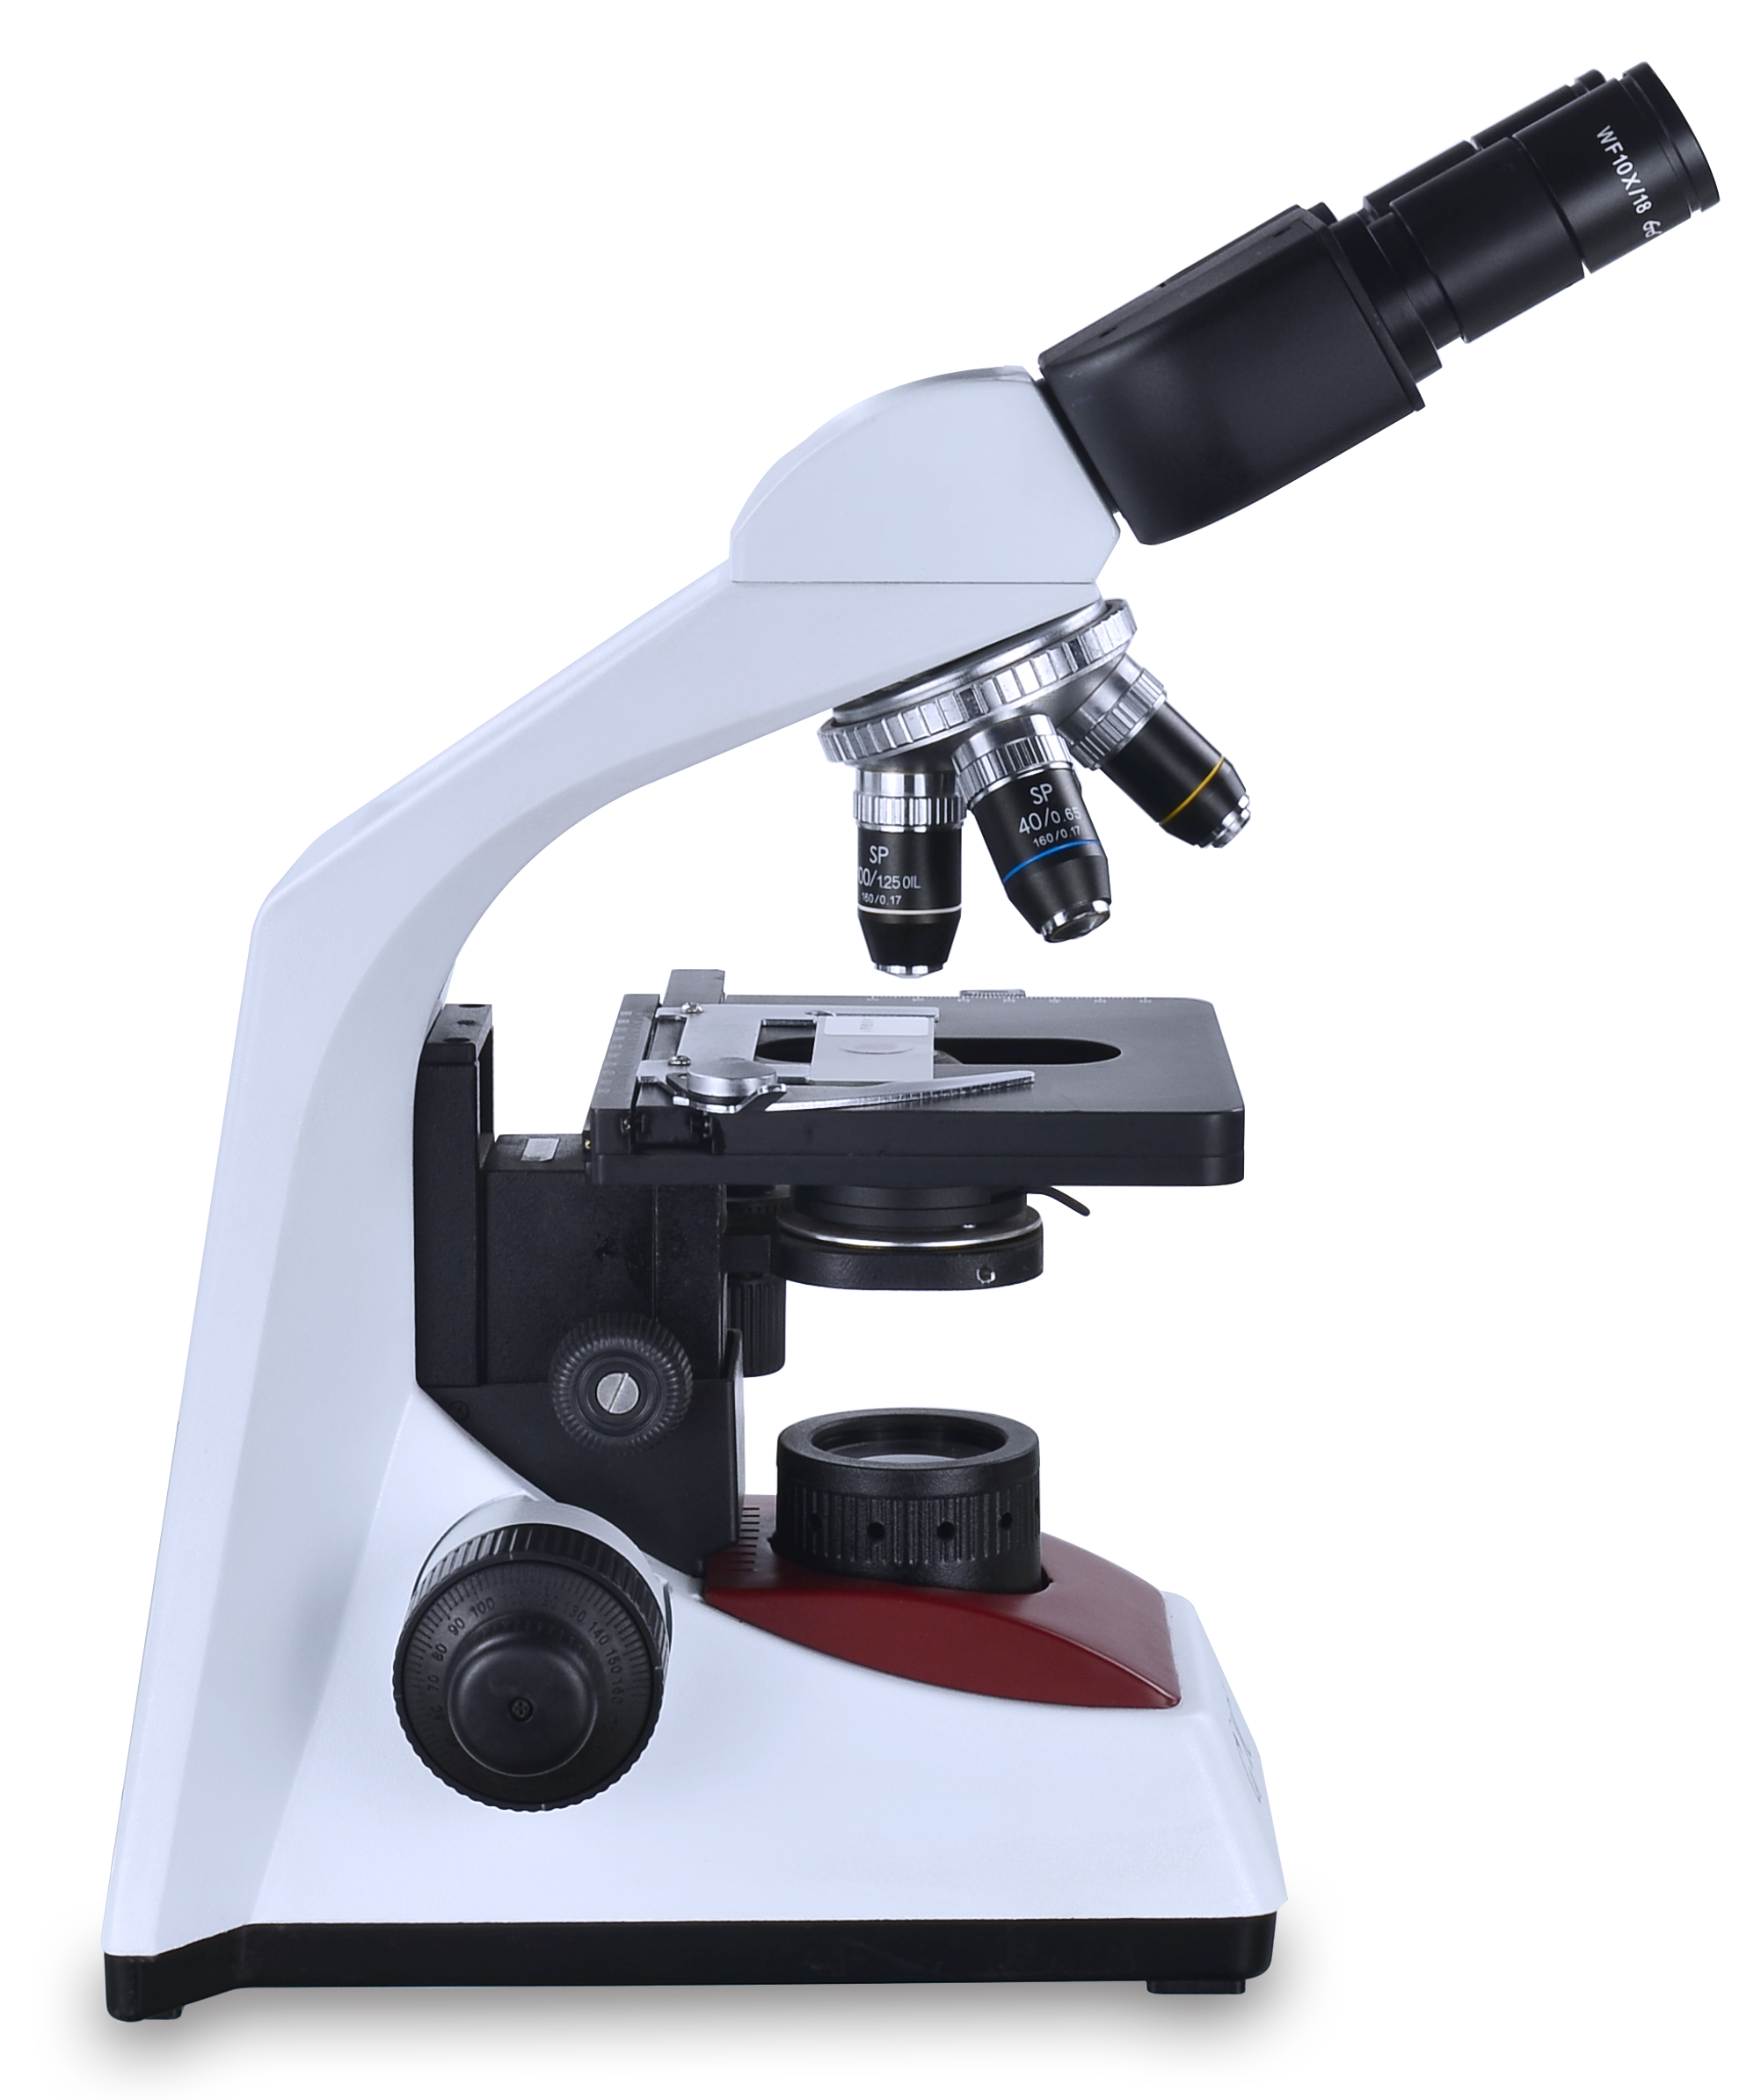 COIC 重光 生物显微镜 BS203 教学机